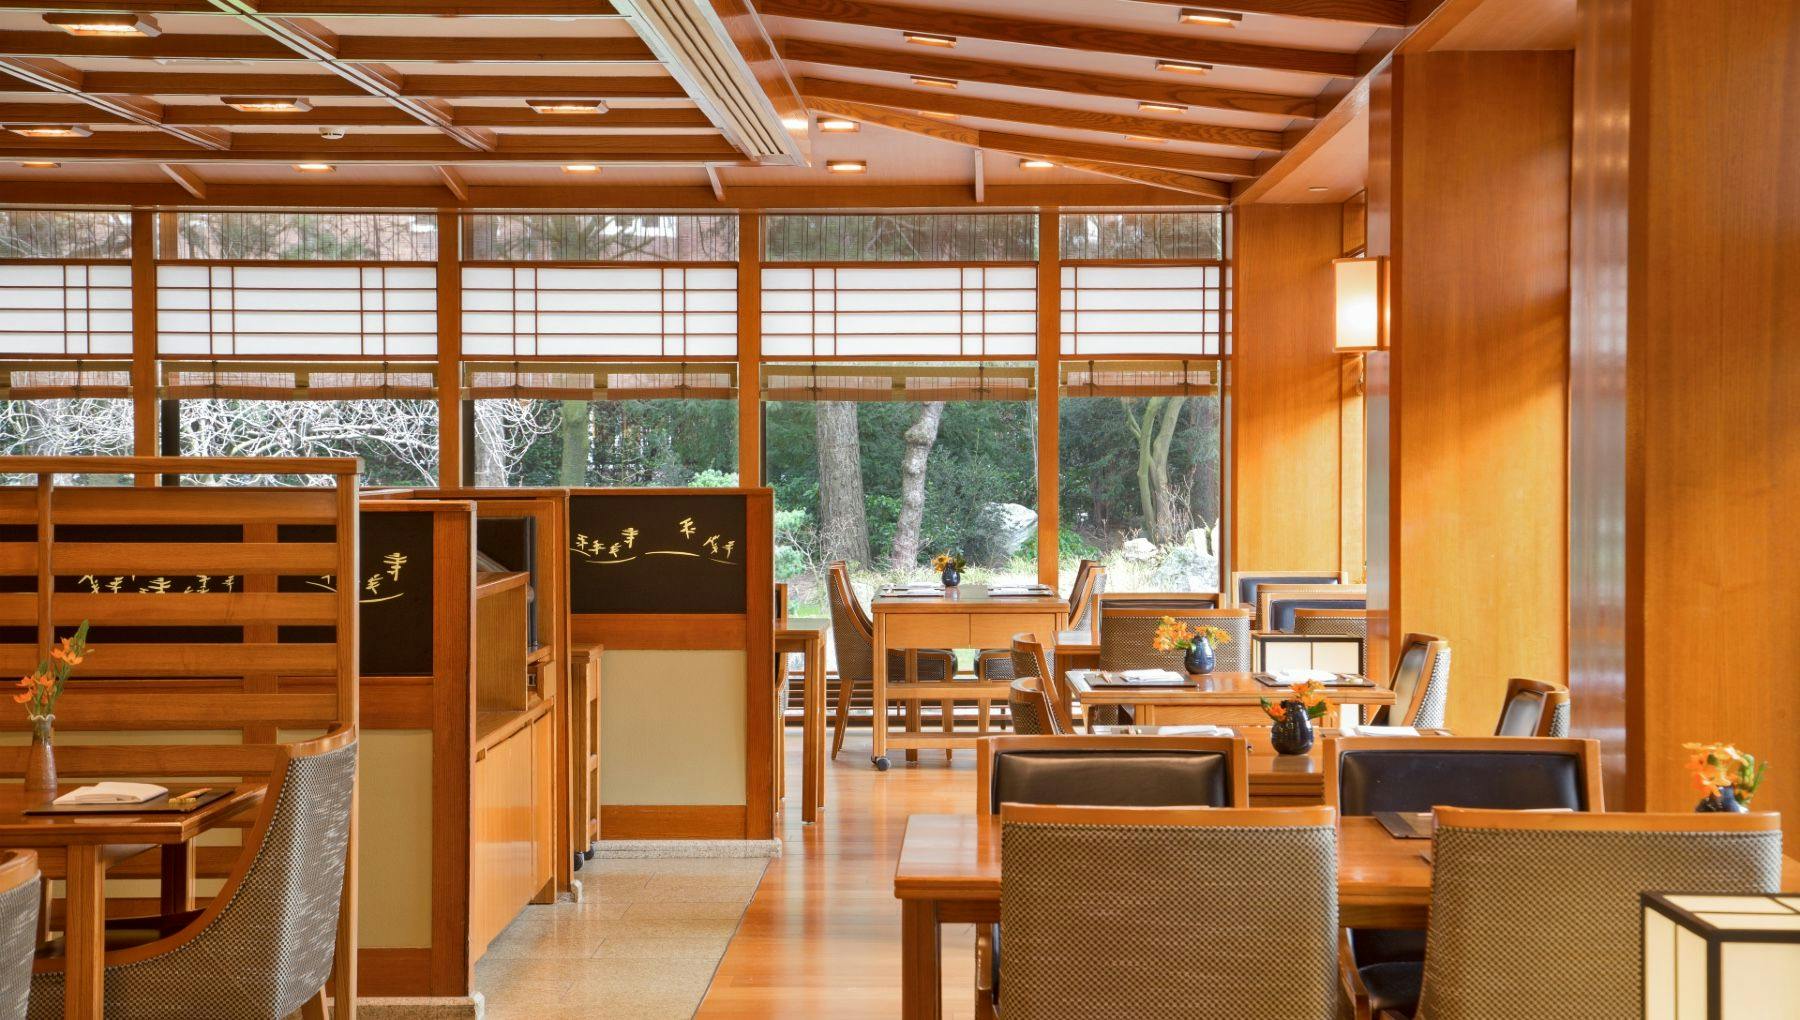 Yamazato restaurant interior